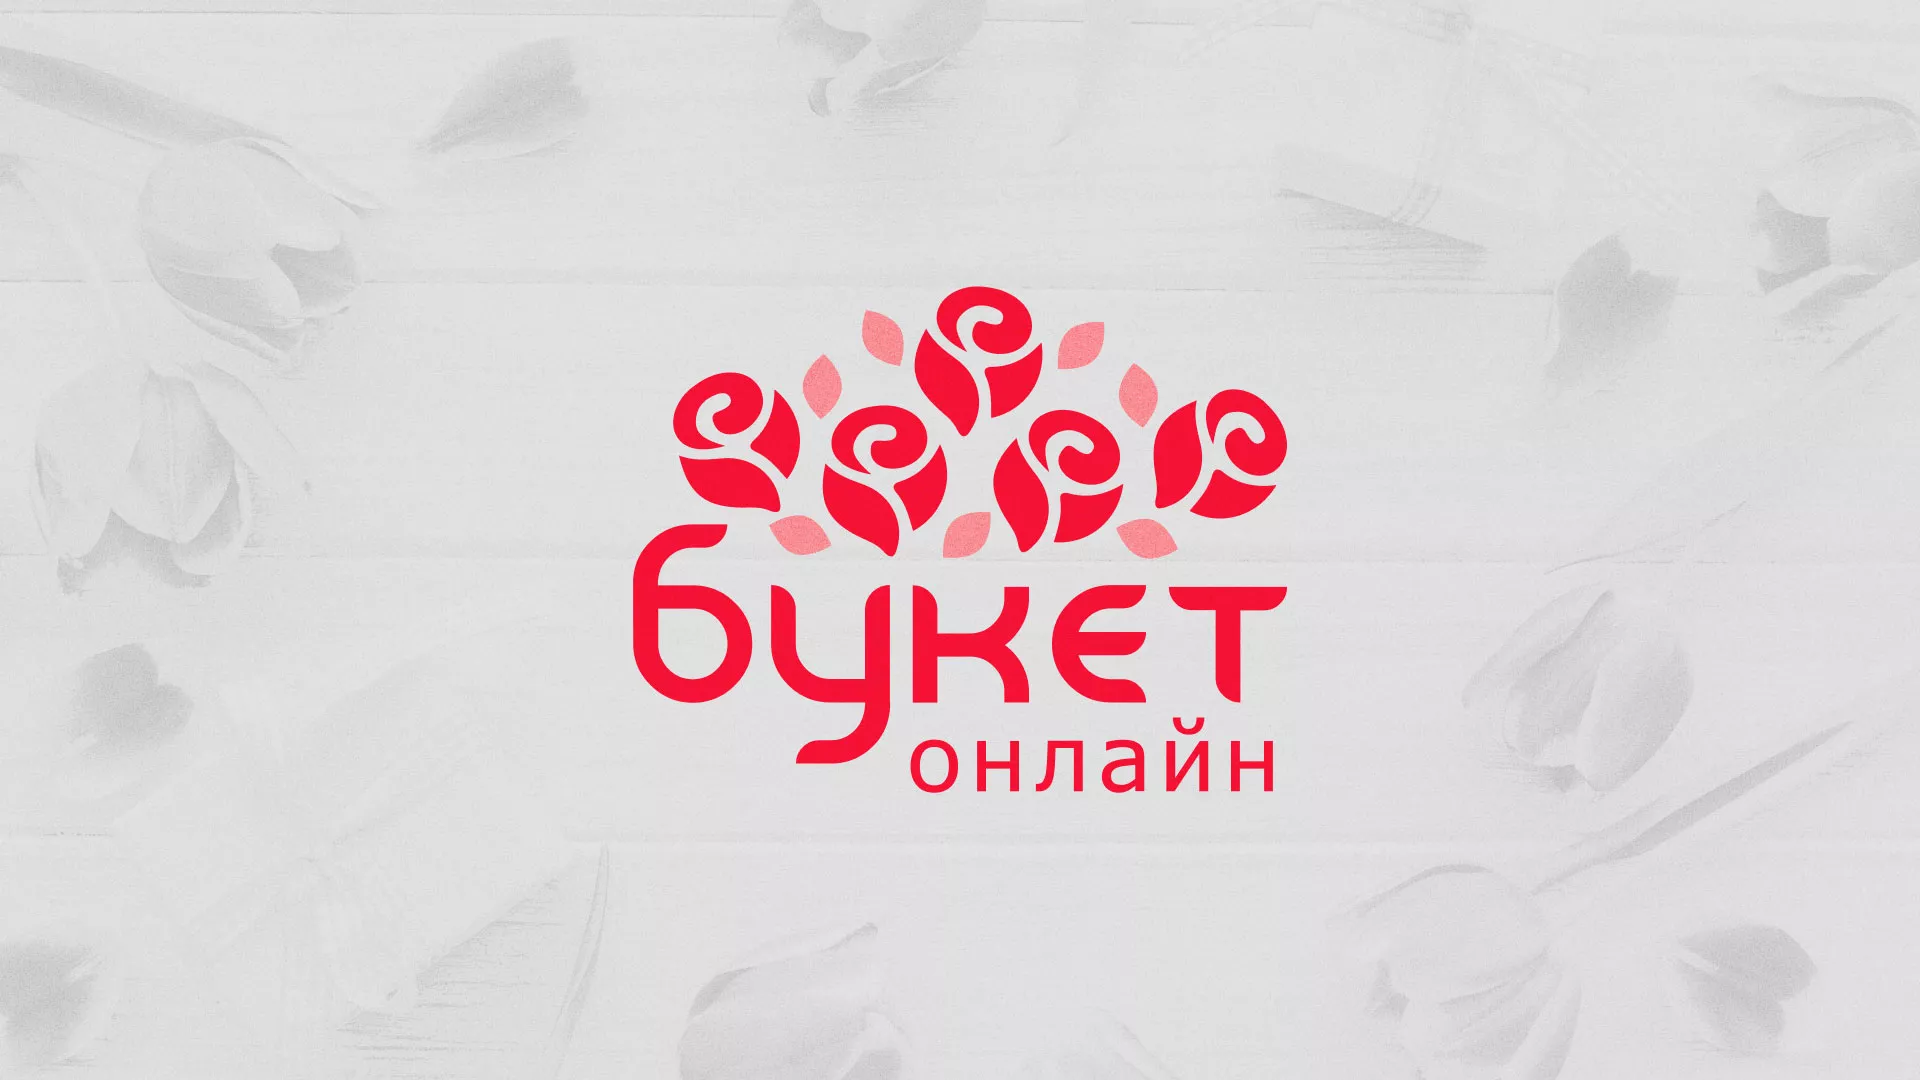 Создание интернет-магазина «Букет-онлайн» по цветам в Карпинске